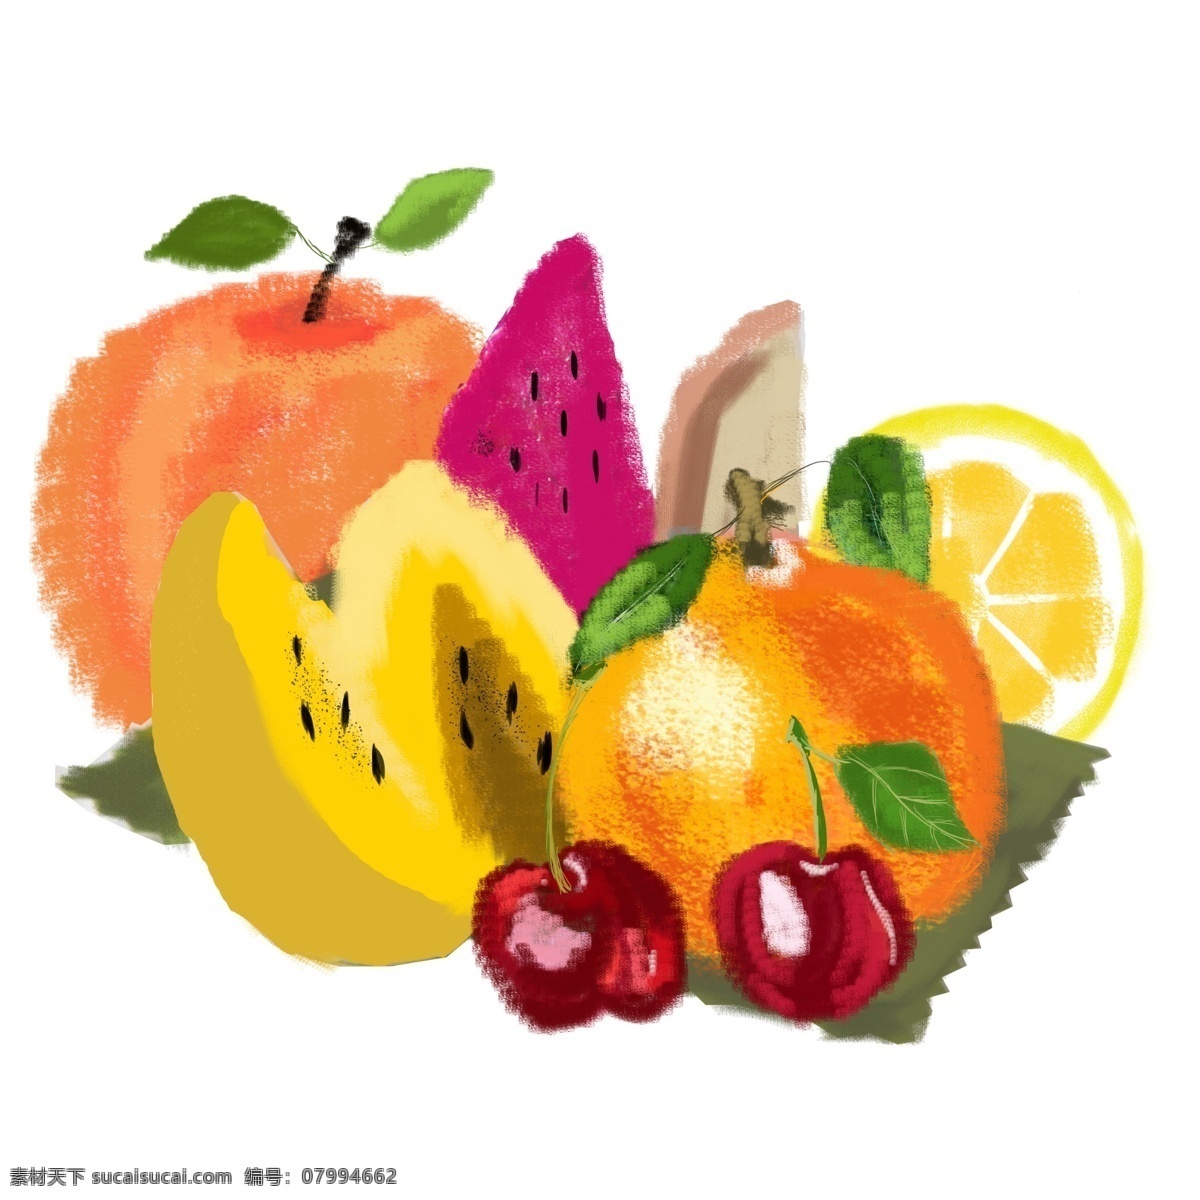 丰收 节 彩色 水果 系列 插画 销售 丰收节 彩色水果系列 水果插画 苹果 樱桃 火龙果 商标水果插画 橘子水蜜桃